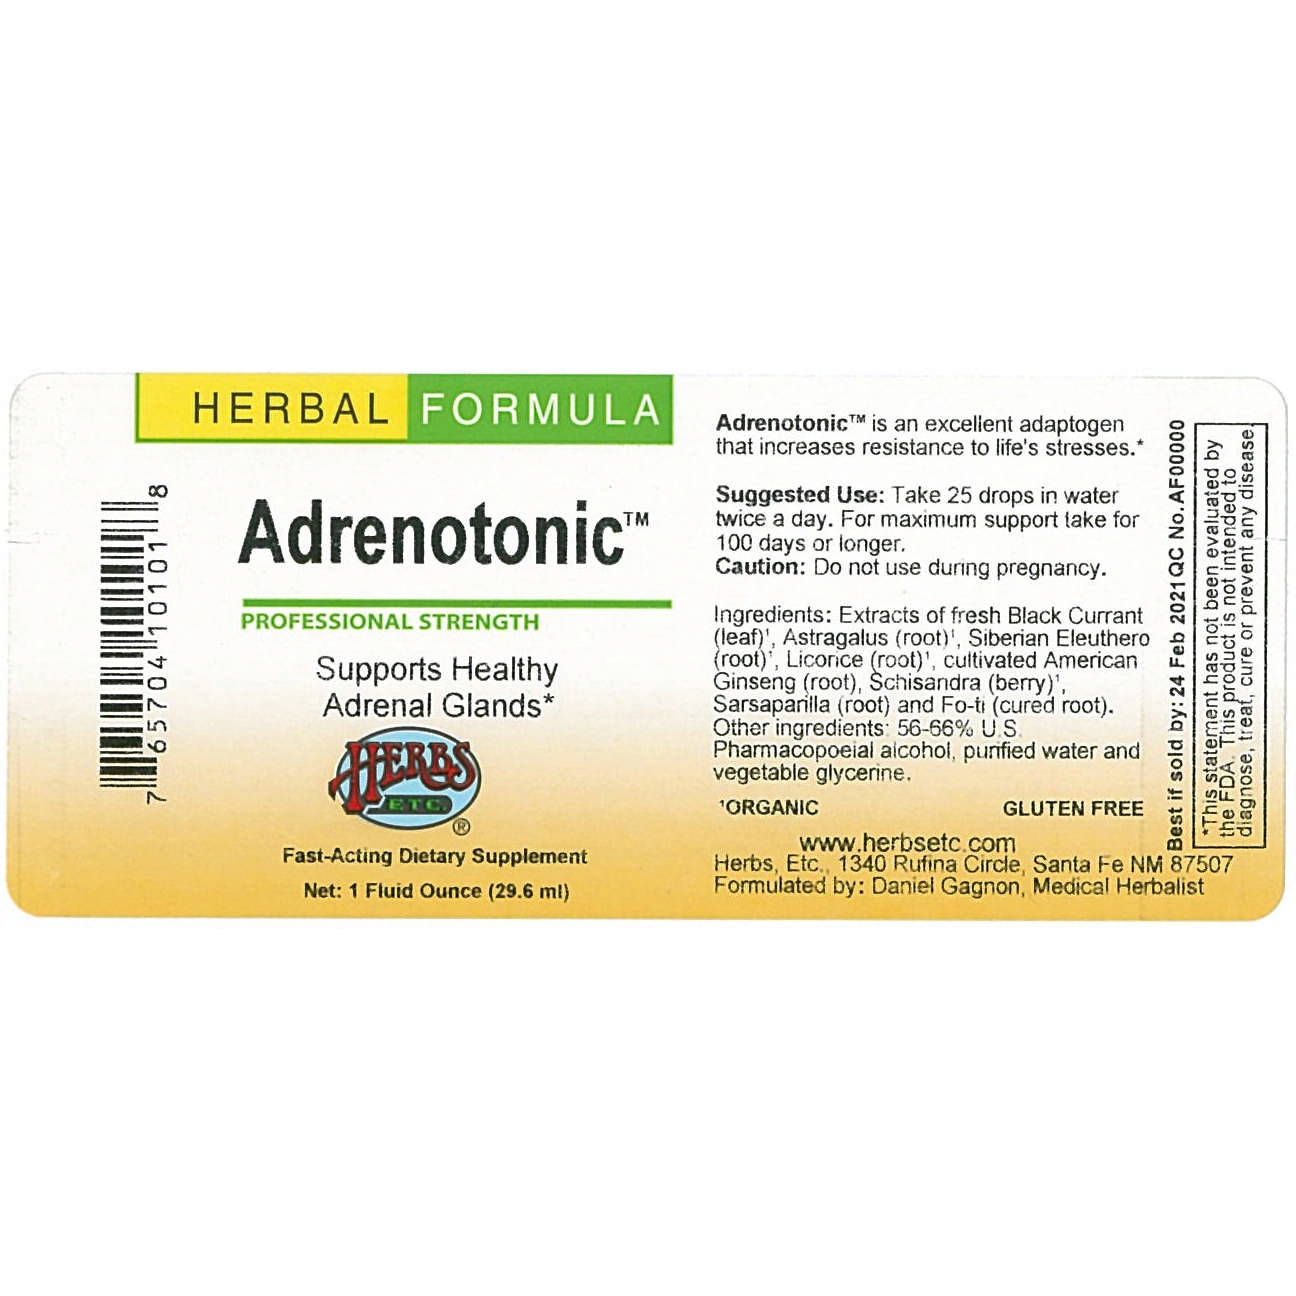 Herbs Etc - Adrenotonic